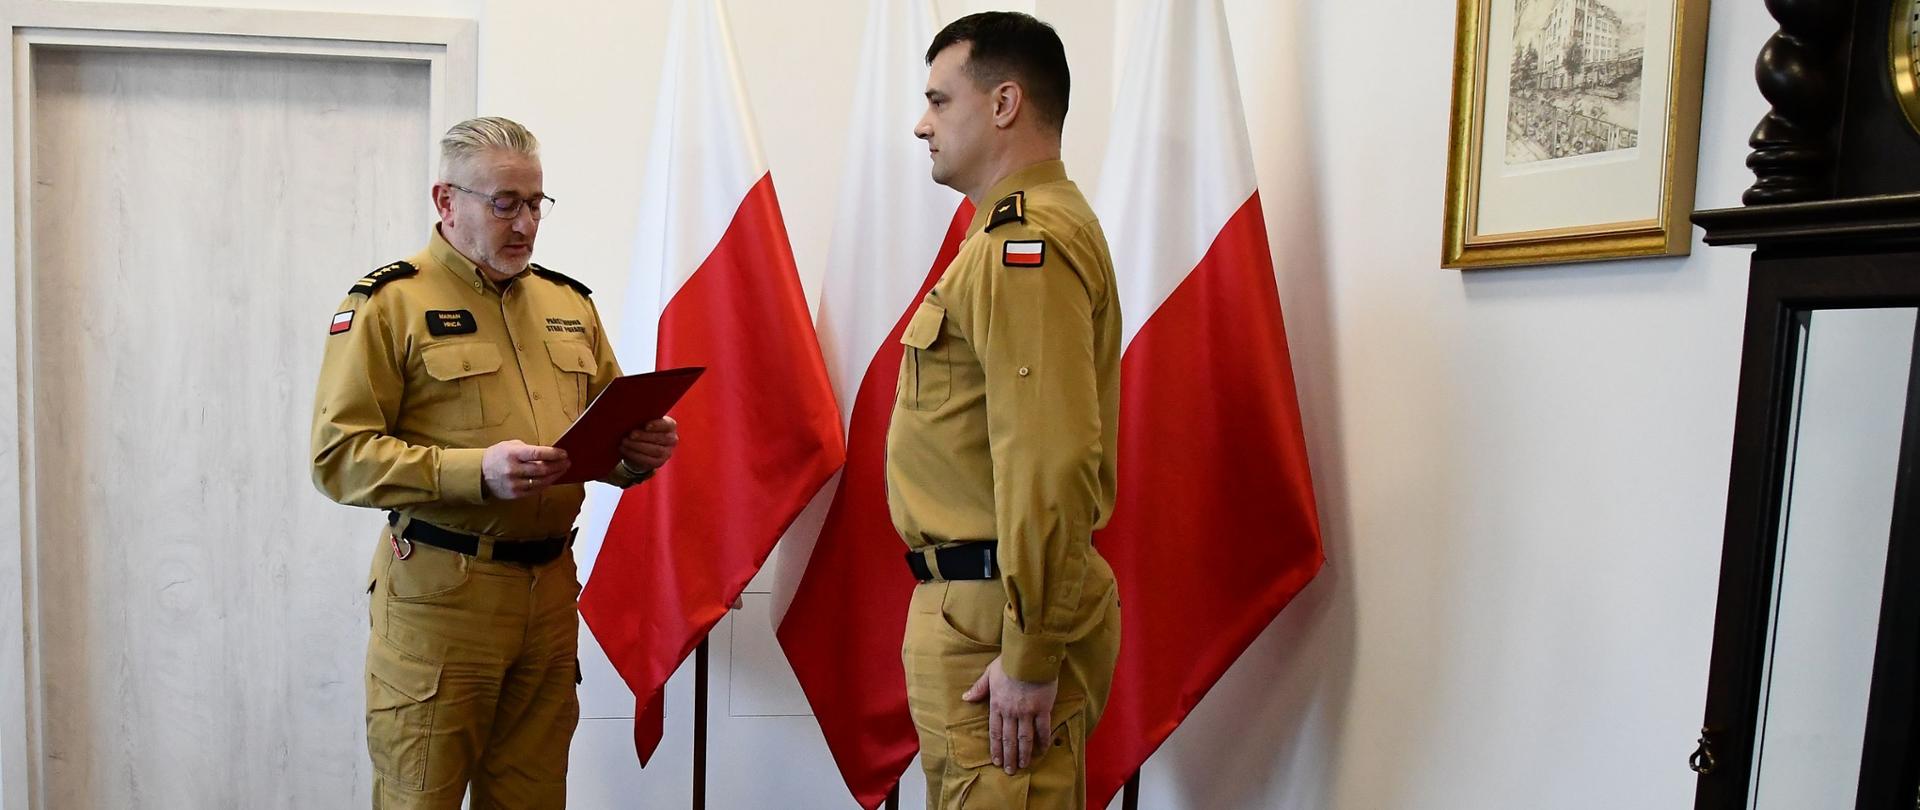 Strażak w okularach w mundurze koloru musztardowego w koszuli trzyma teczkę przed nim stoi funkcjonariusz Państwowej Straży Pożarnej w mundurze koloru musztardowego za nimi ustawione są trzy flagi Polski na ścianie wisi obraz oraz przed nimi stoi zegar.